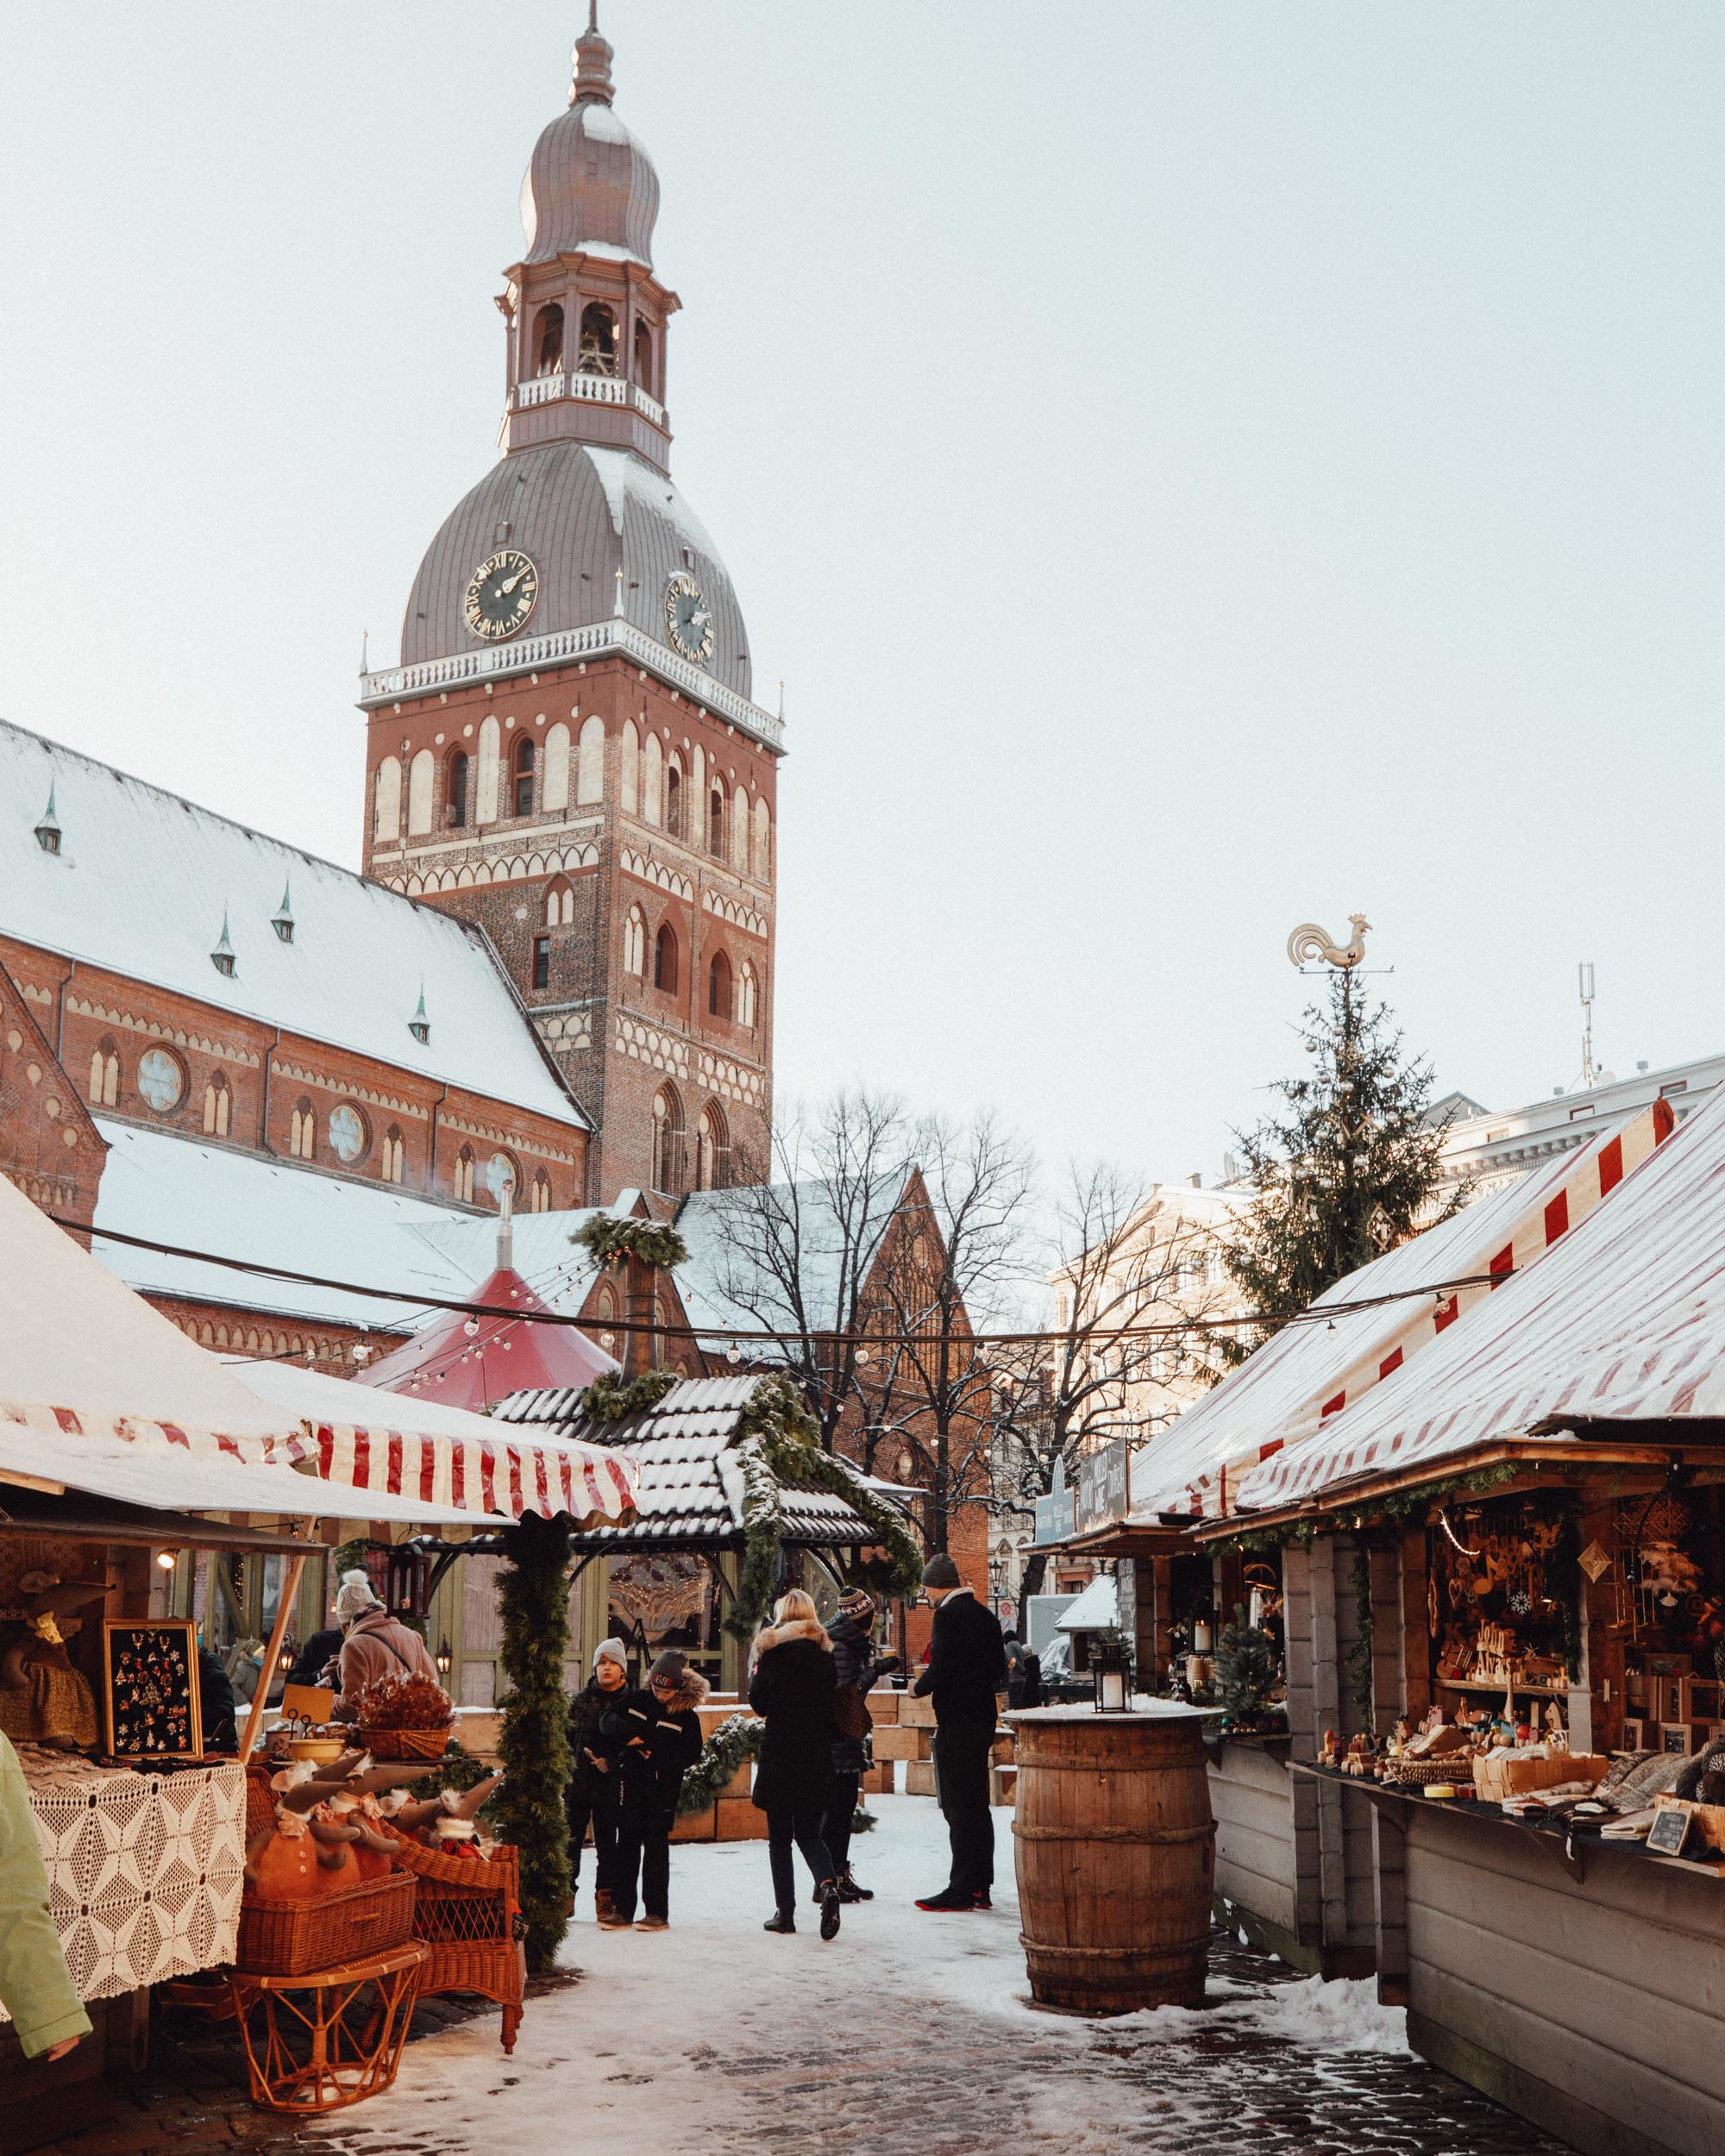 Riga Latvia Christmas Market in Winter via @finduslost